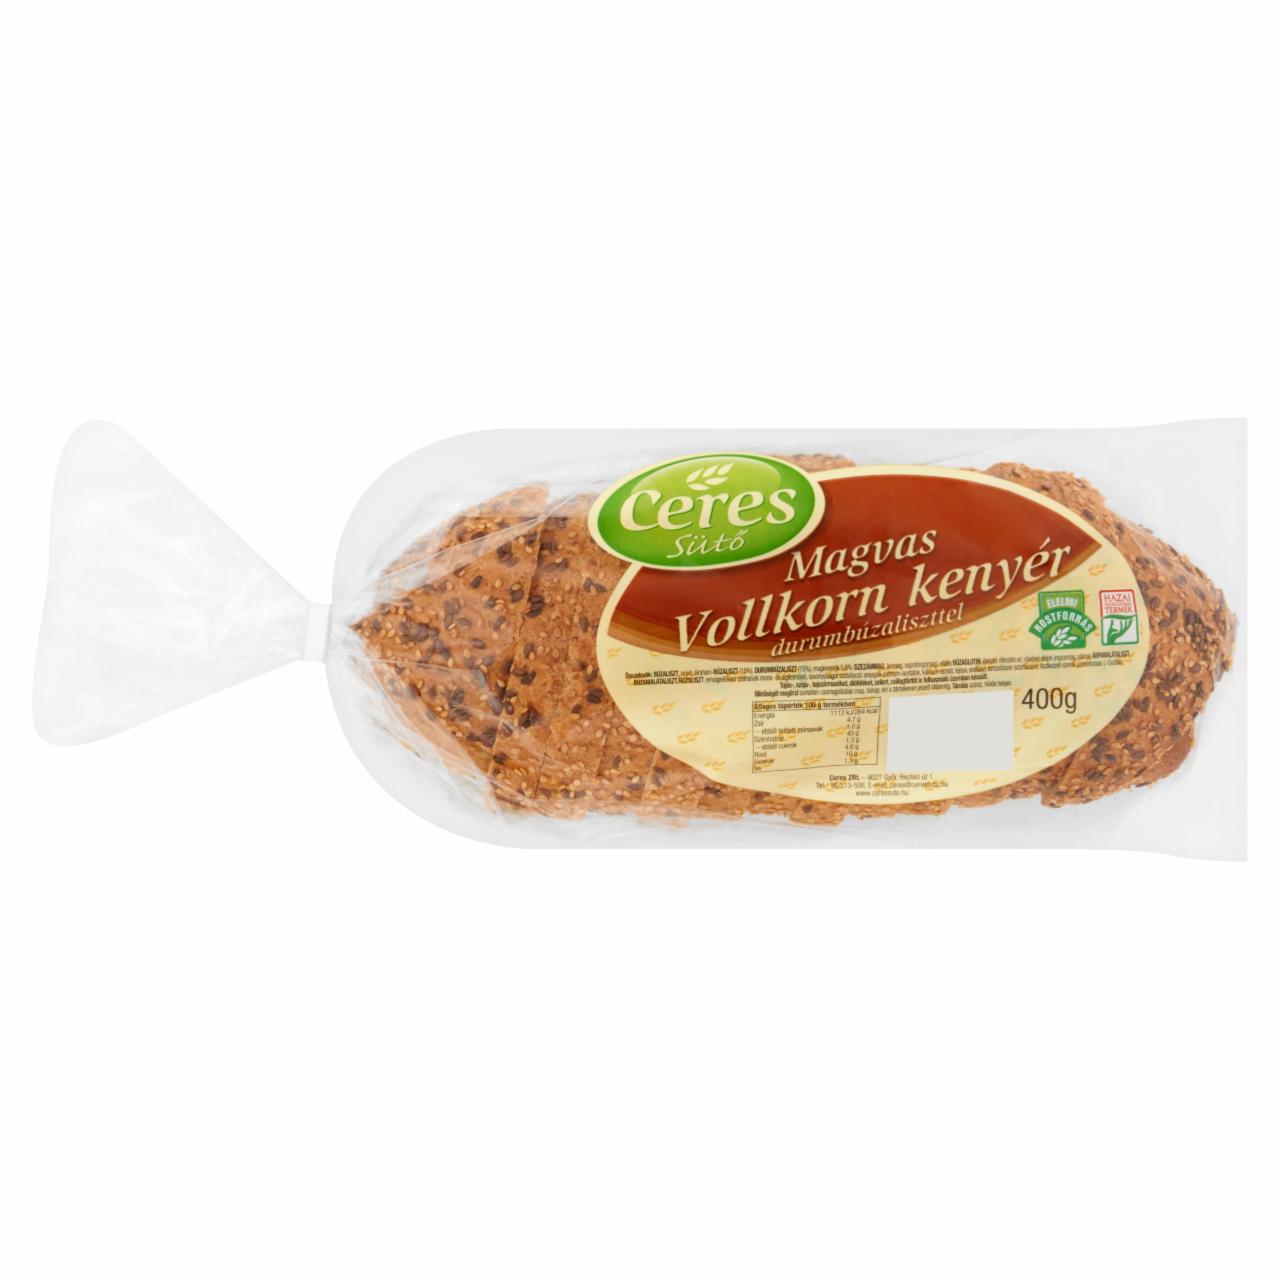 Képek - Ceres Sütő magvas Vollkorn kenyér durumbúzaliszttel 400 g